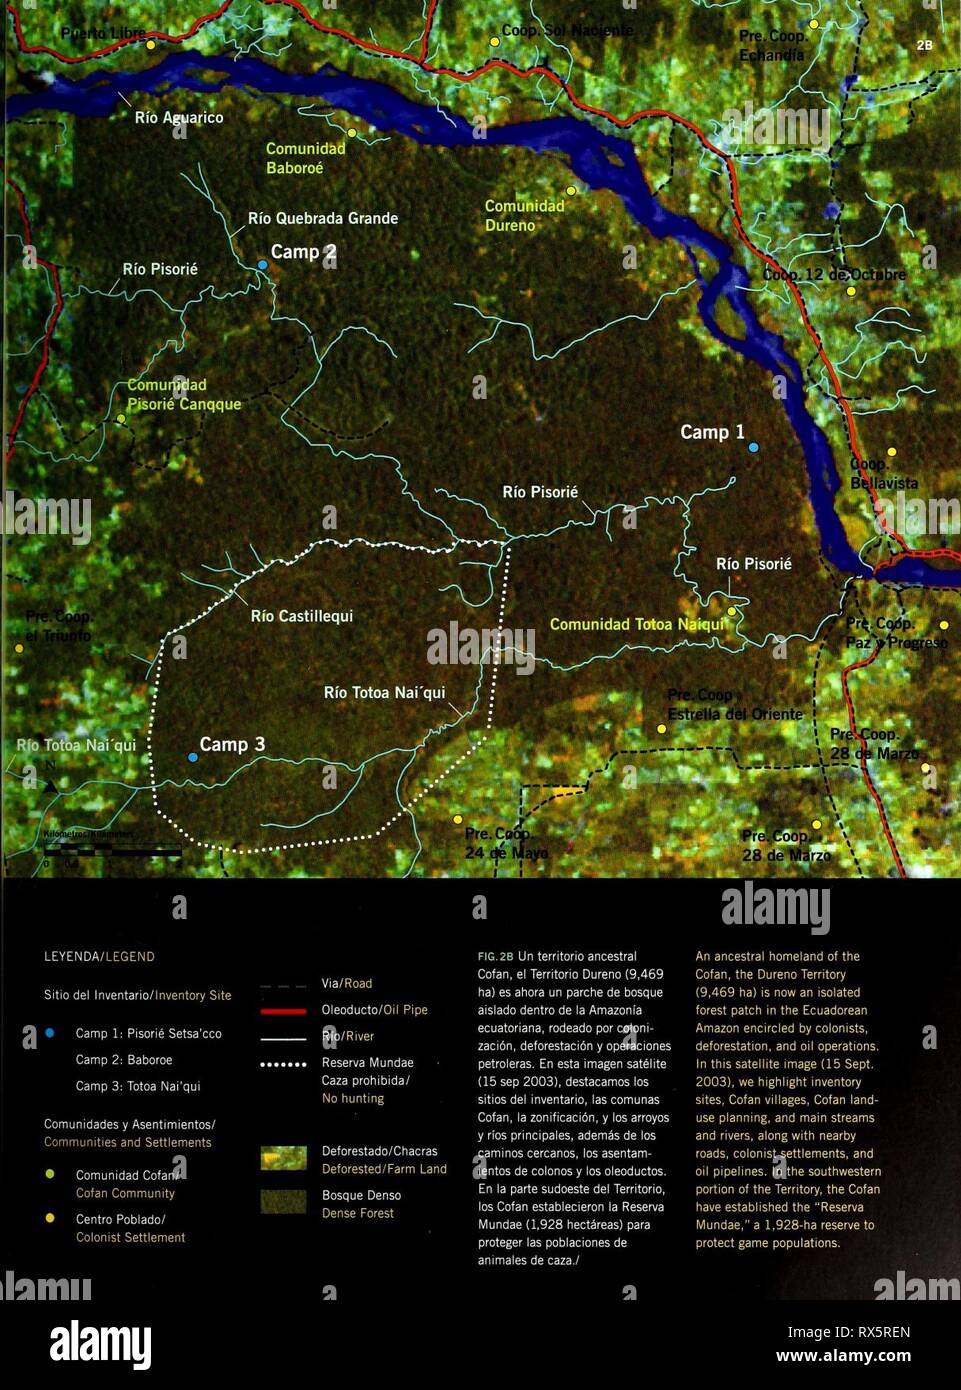 Ecuador  Territorio Cofan Dureno Ecuador : Territorio Cofan Dureno ecuadorterritor192007borm Year: 2007  Via/Road Oleoducto/Oil Pipe Rio/River Reserva Mundae Caza prohibida/ No hunting Deforestado/Chacras Deforested/Farm Land Bosque Denso Dense Forest FIG.2B Un territorio ancestral Cofan, el Territorio Dureno (9,469 ha) es ahora un parche de bosque aislado dentro de la Amazonia ecuatoriana, rodeado por coloni- zación, deforestación y operaciones petroleras. En esta imagen satélite (15 sep 2003), destacamos los sitios del inventario, las comunas Cofan, la zonificación, y los arroyos y ríos prin Stock Photo